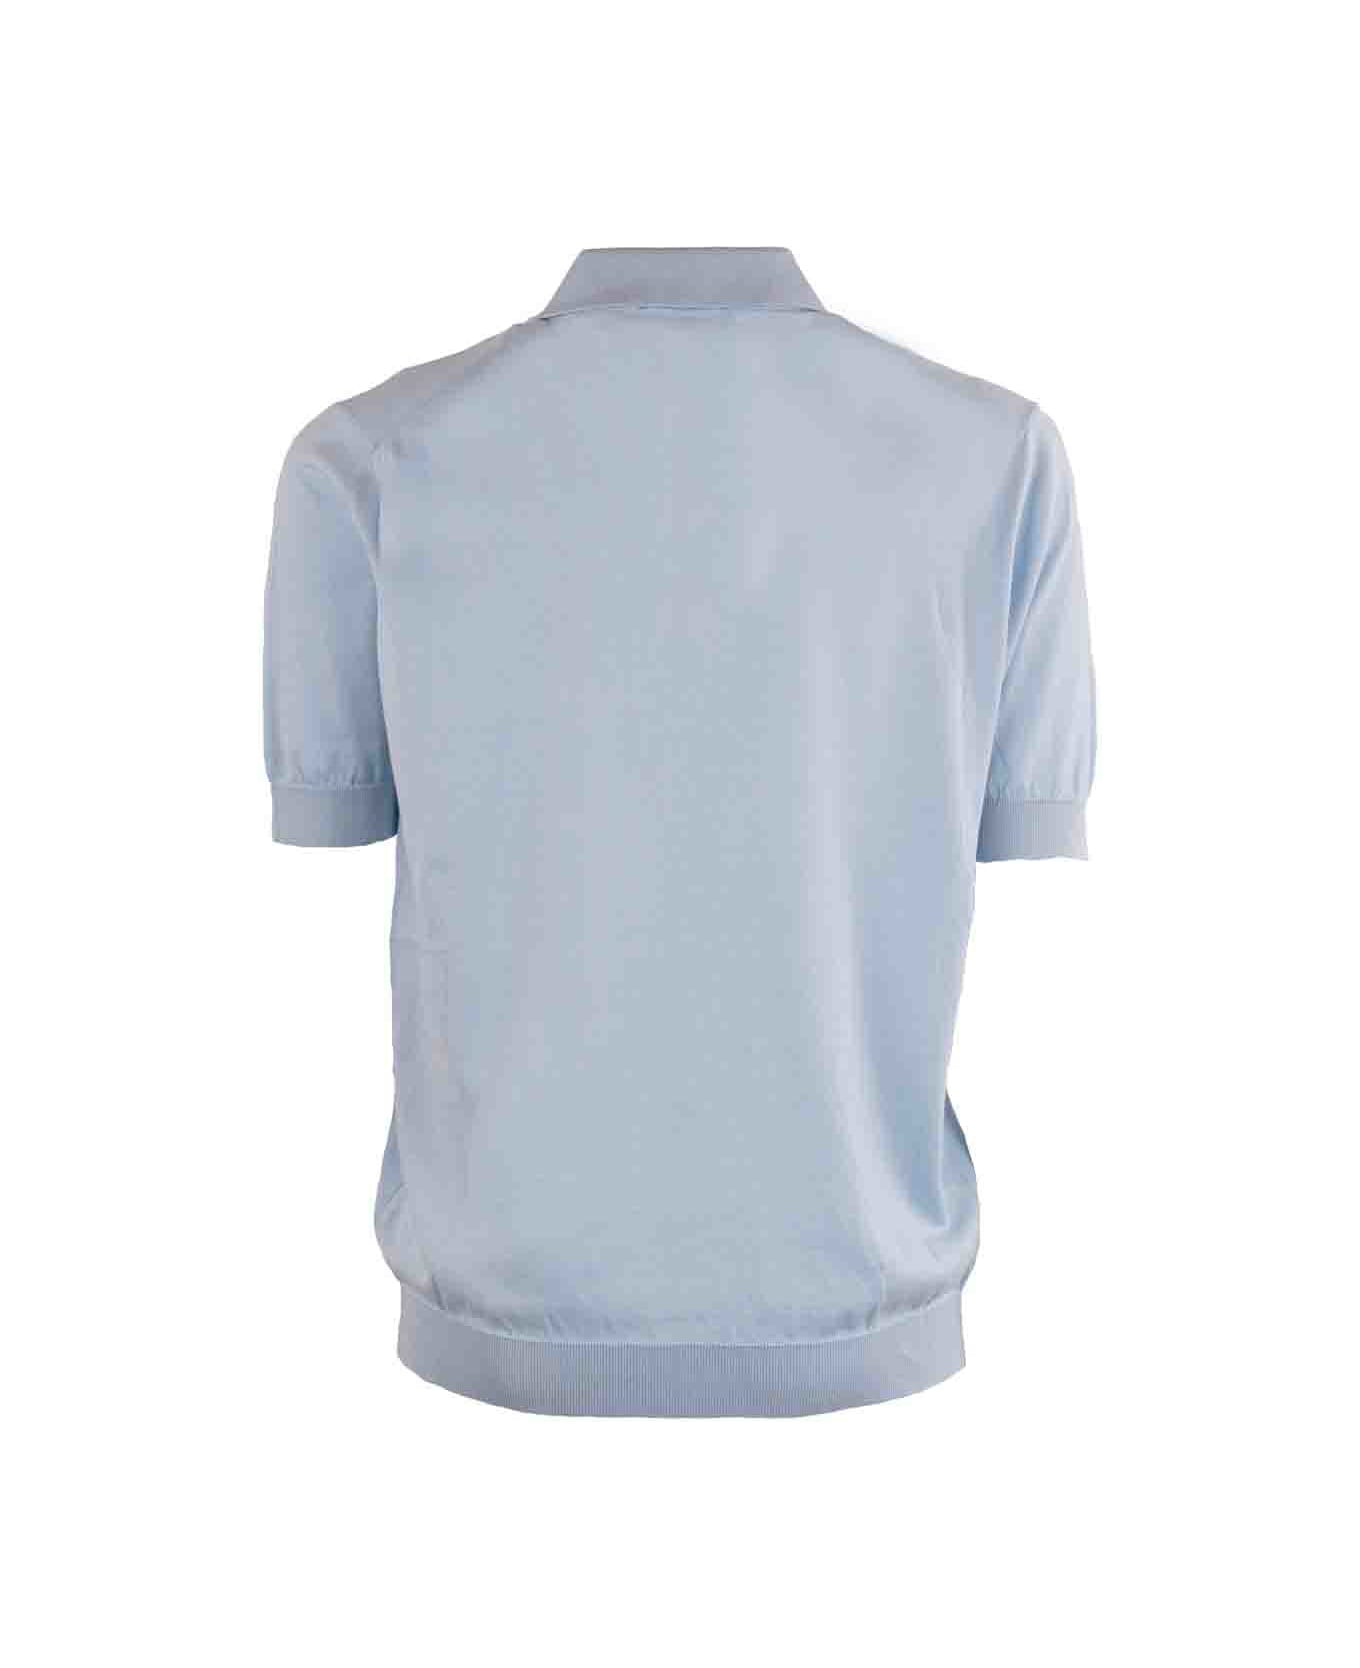 Lardini T-shirts And Polos Light Blue - Light Blue